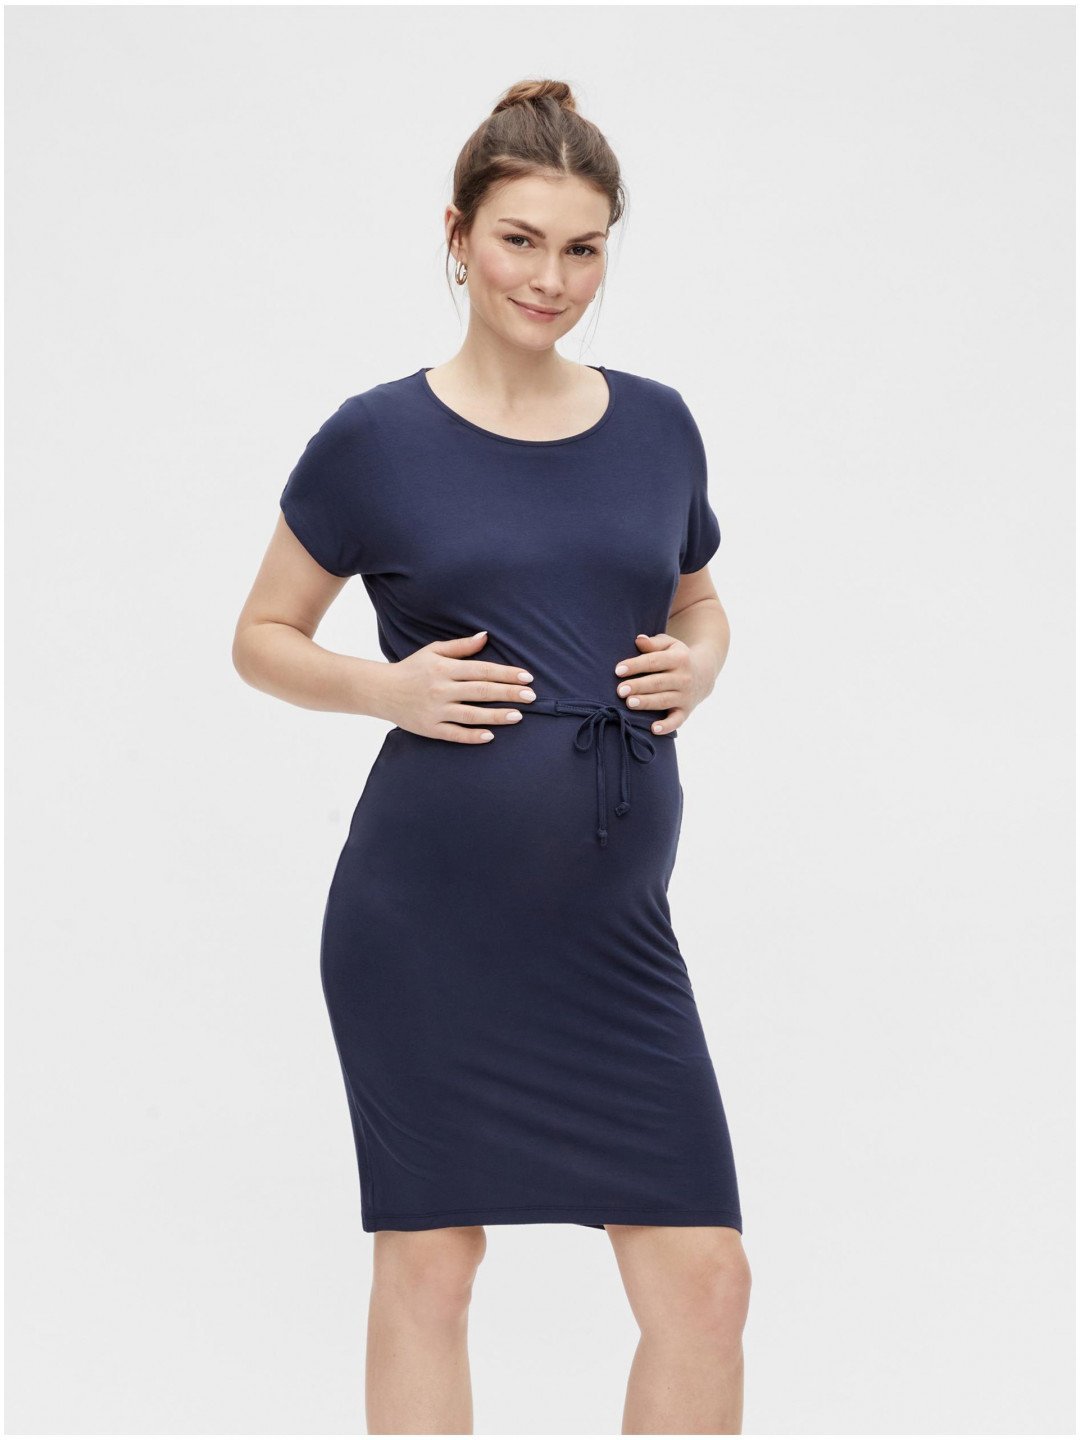 Tmavě modré těhotenské šaty Mama licious Alison